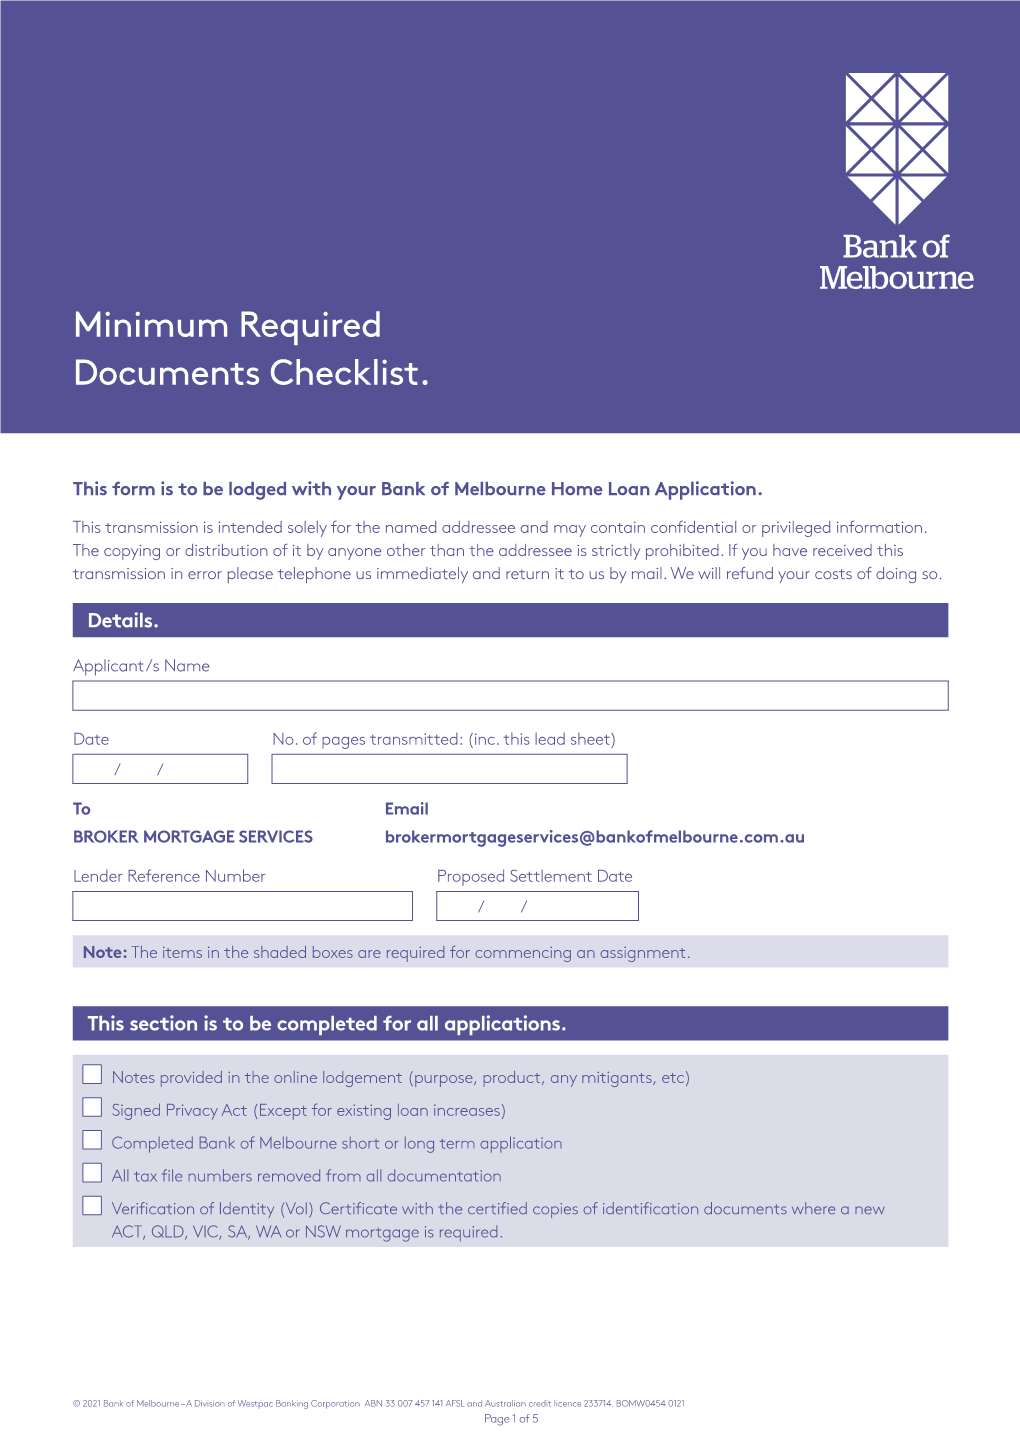 Minimum Required Documents Checklist